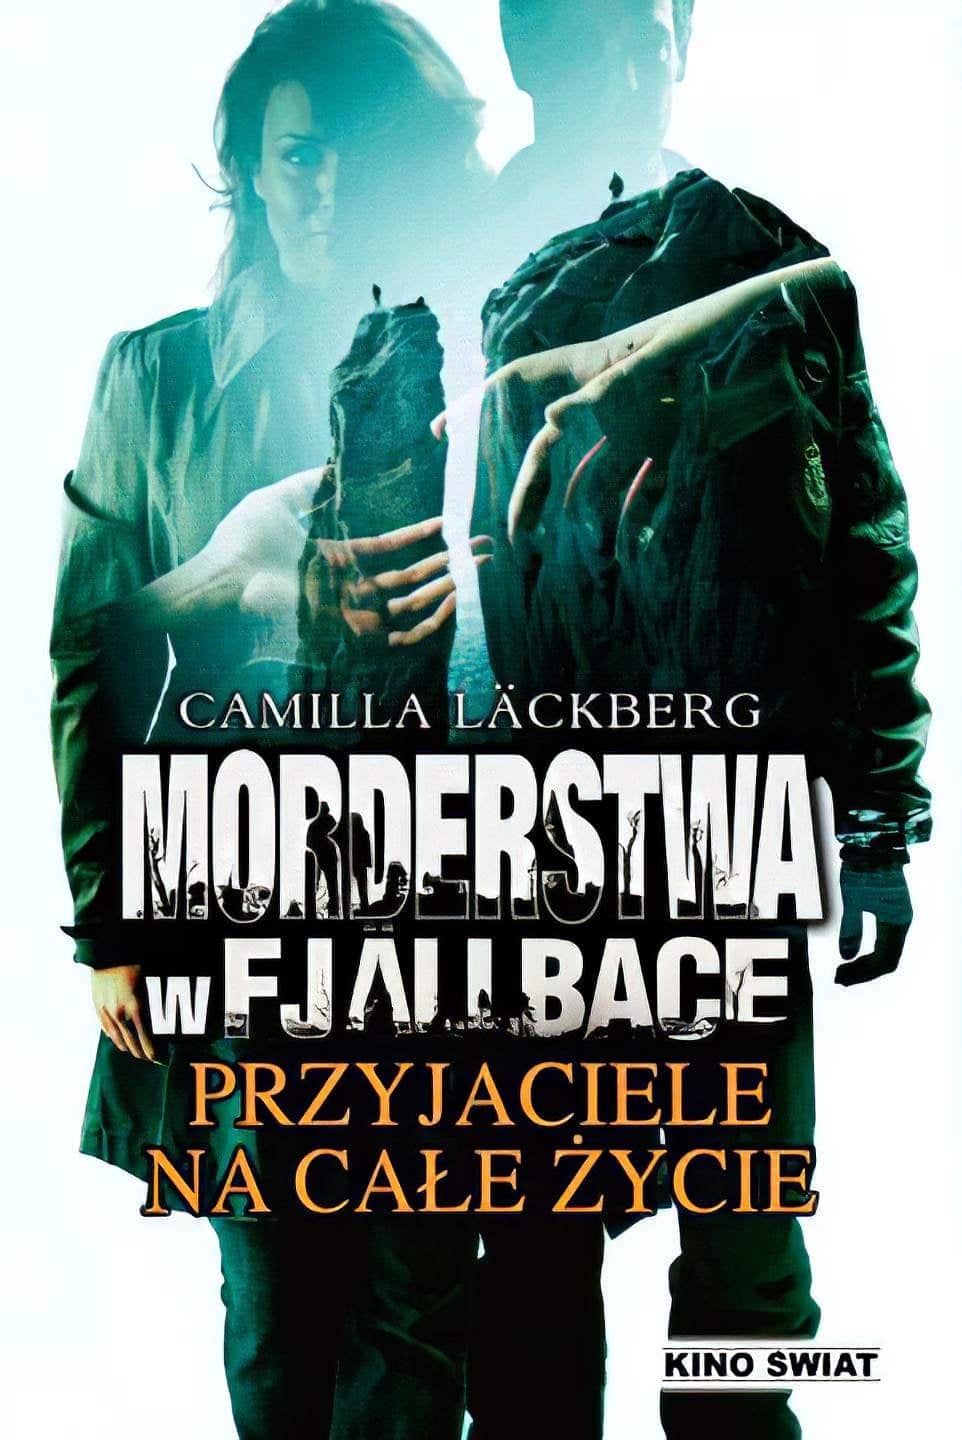 Plakat von "Camilla Läckberg 05 - Tödliches Klassentreffen"